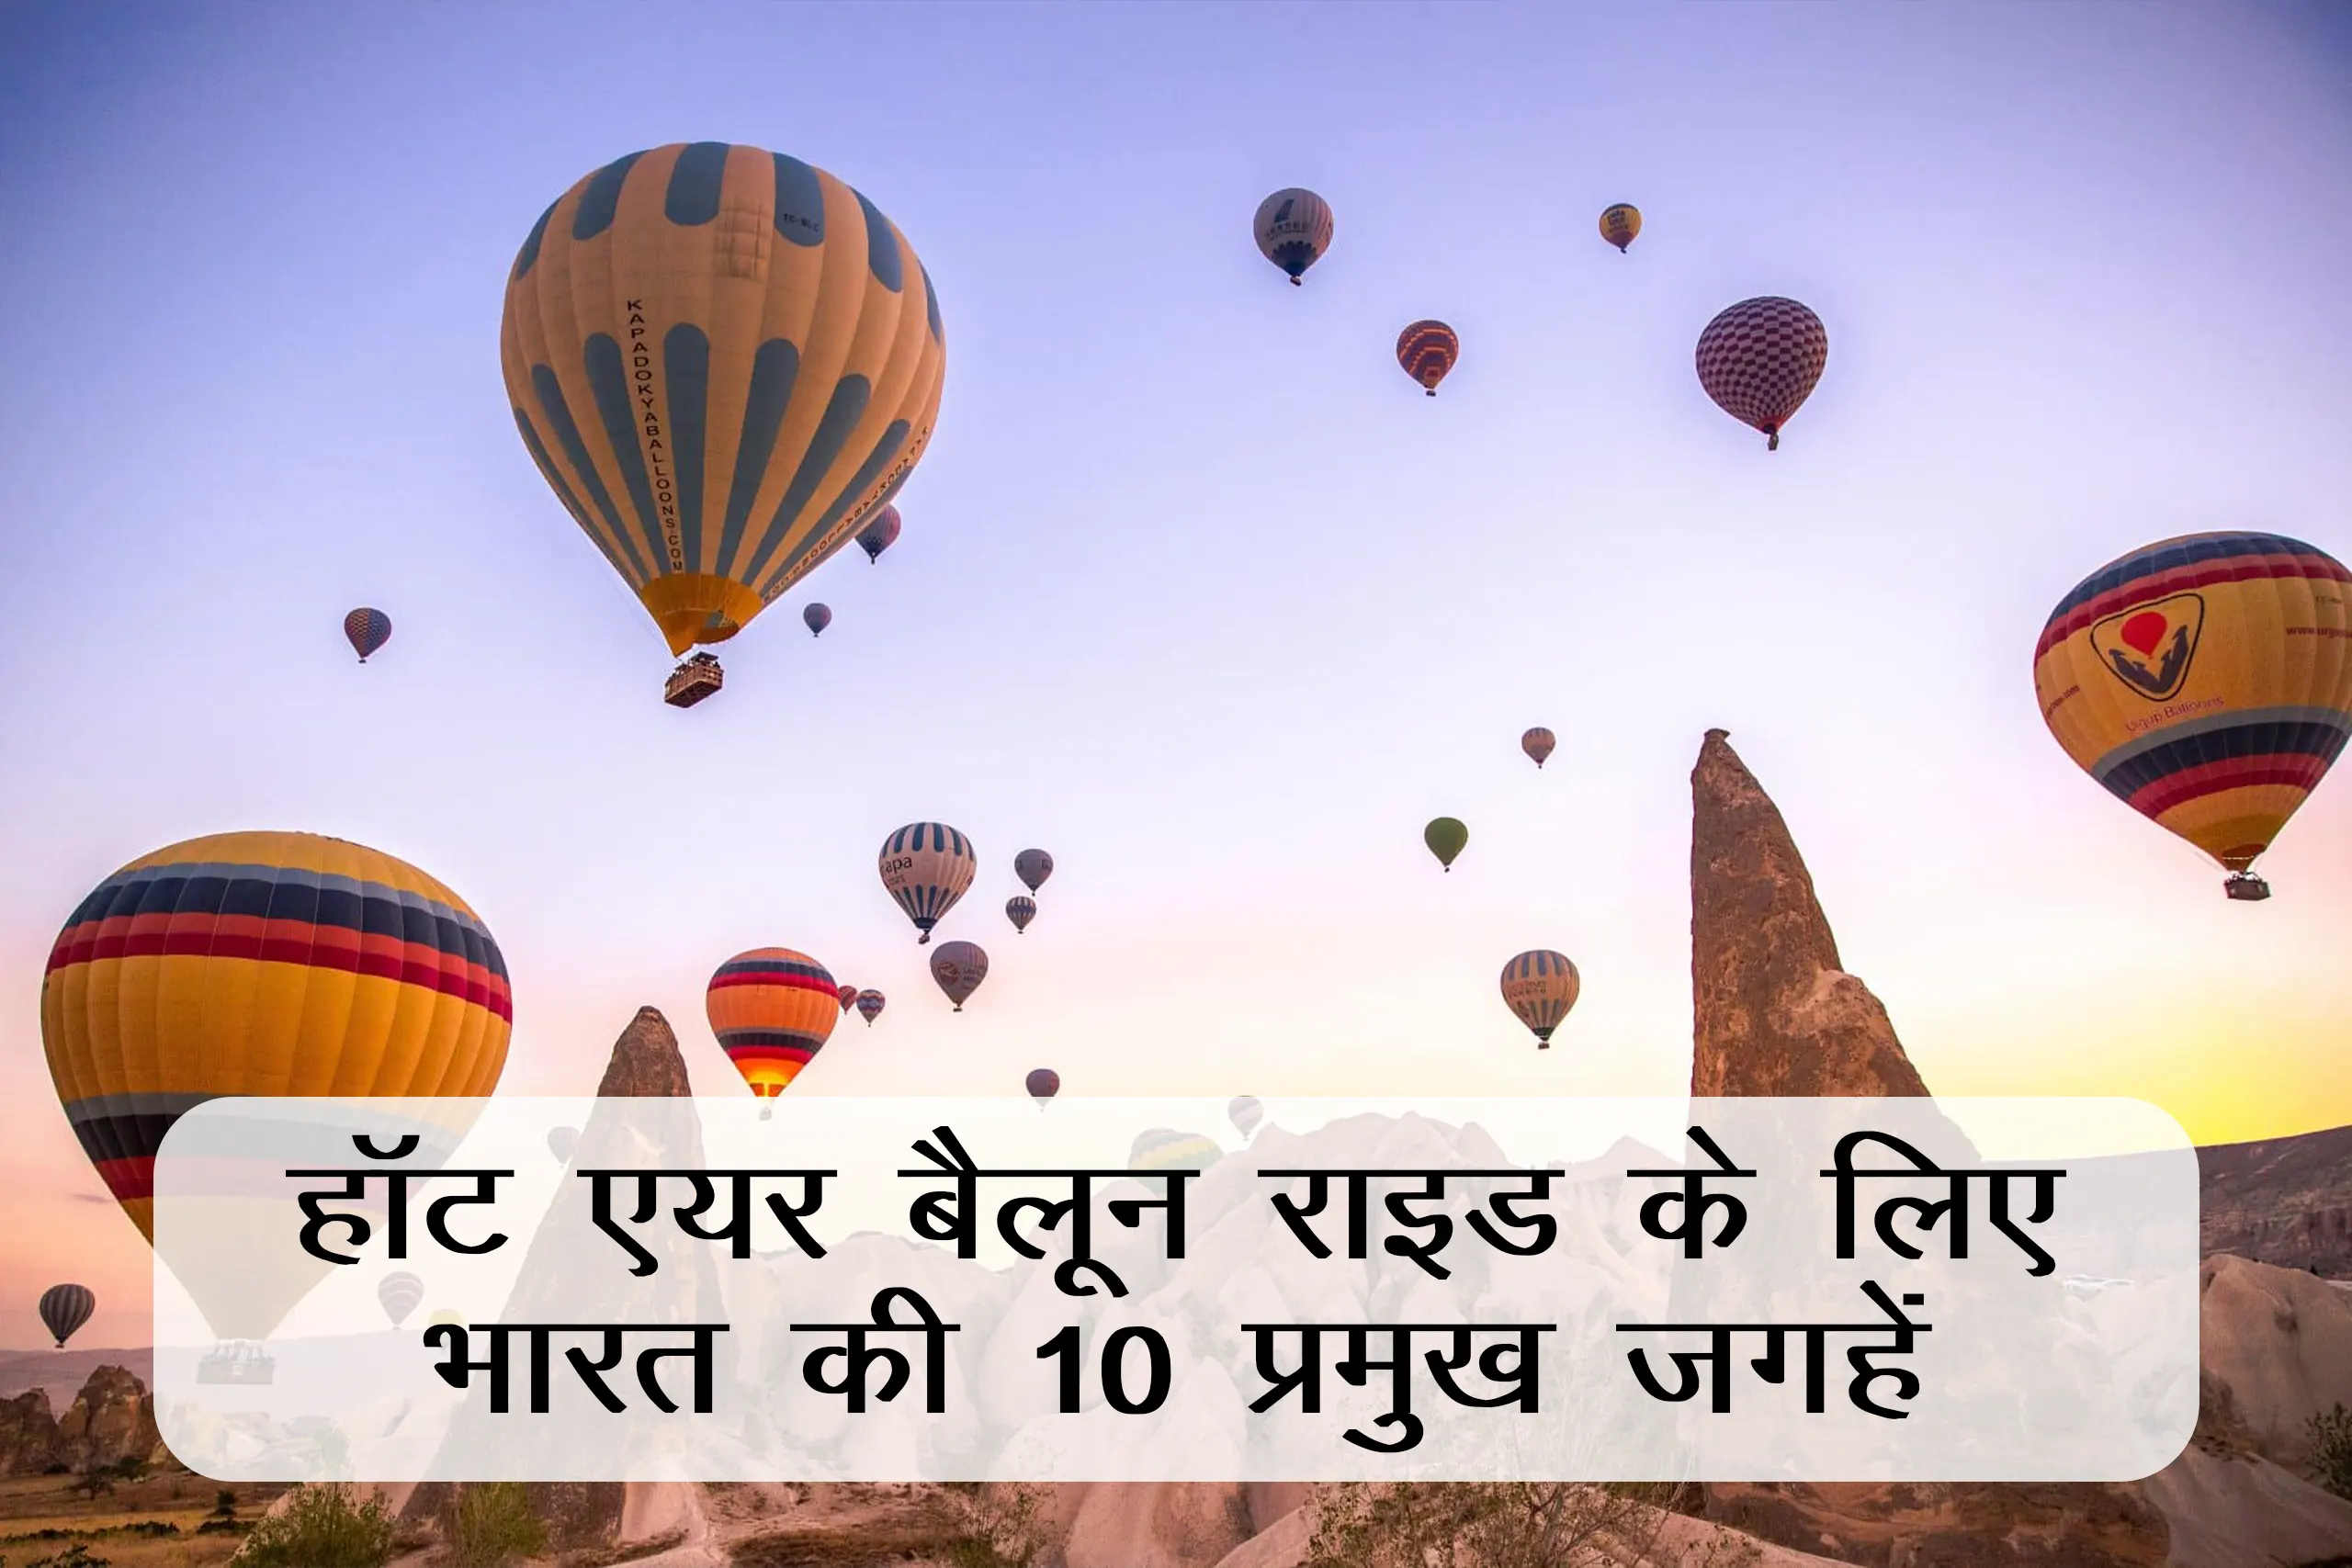 हॉट एयर बैलून राइड के लिए भारत की 10 प्रमुख जगहें